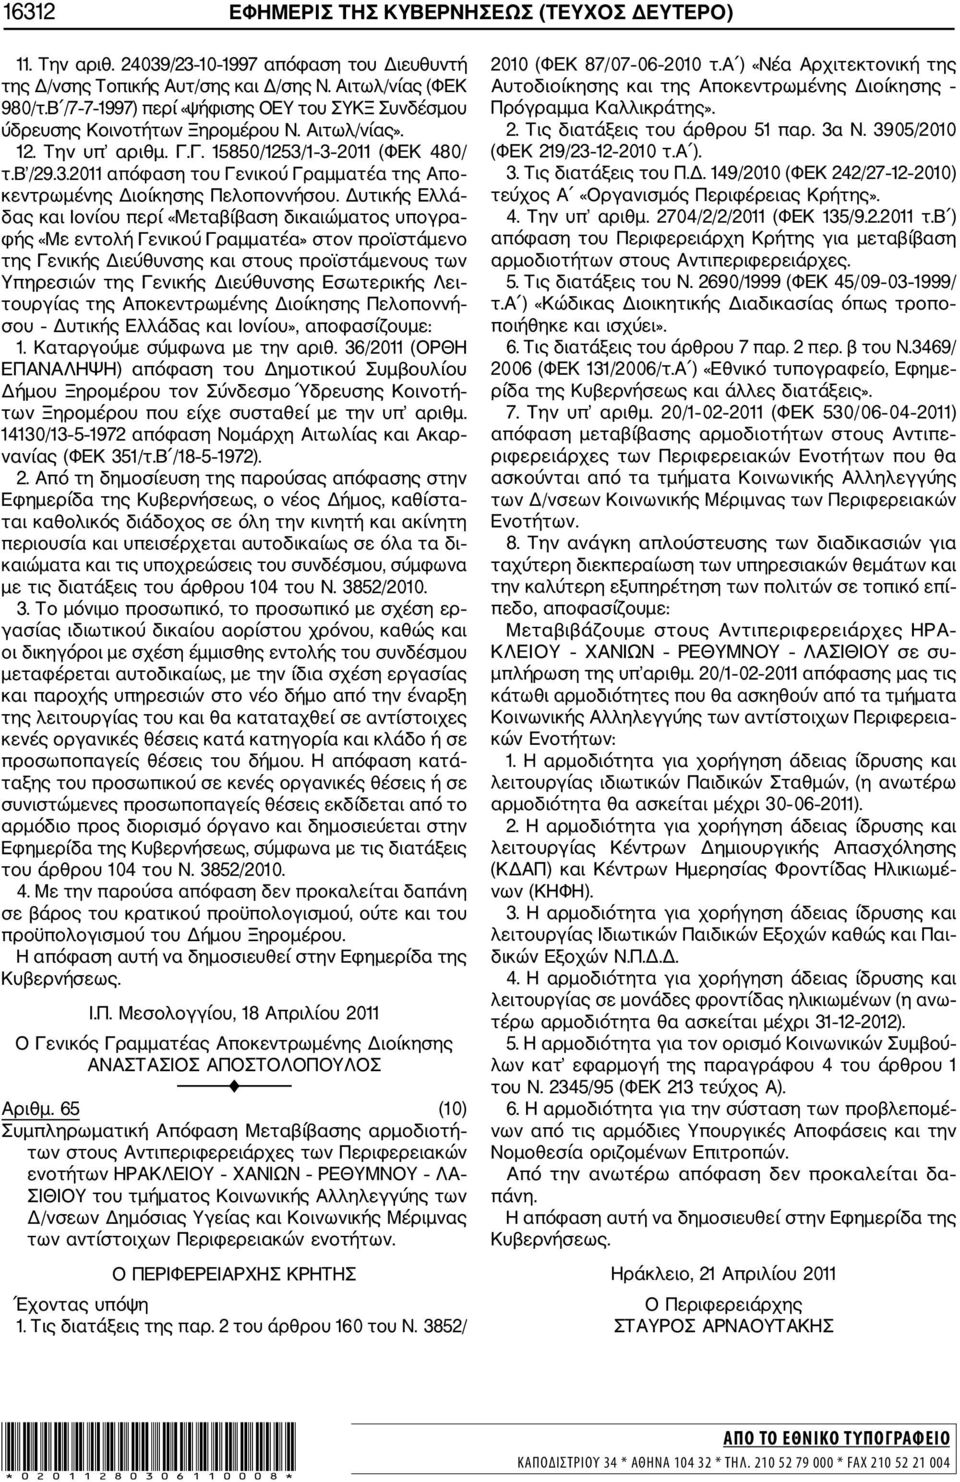 1 3 2011 (ΦΕΚ 480/ τ.β /29.3.2011 απόφαση του Γενικού Γραμματέα της Απο κεντρωμένης Διοίκησης Πελοποννήσου.